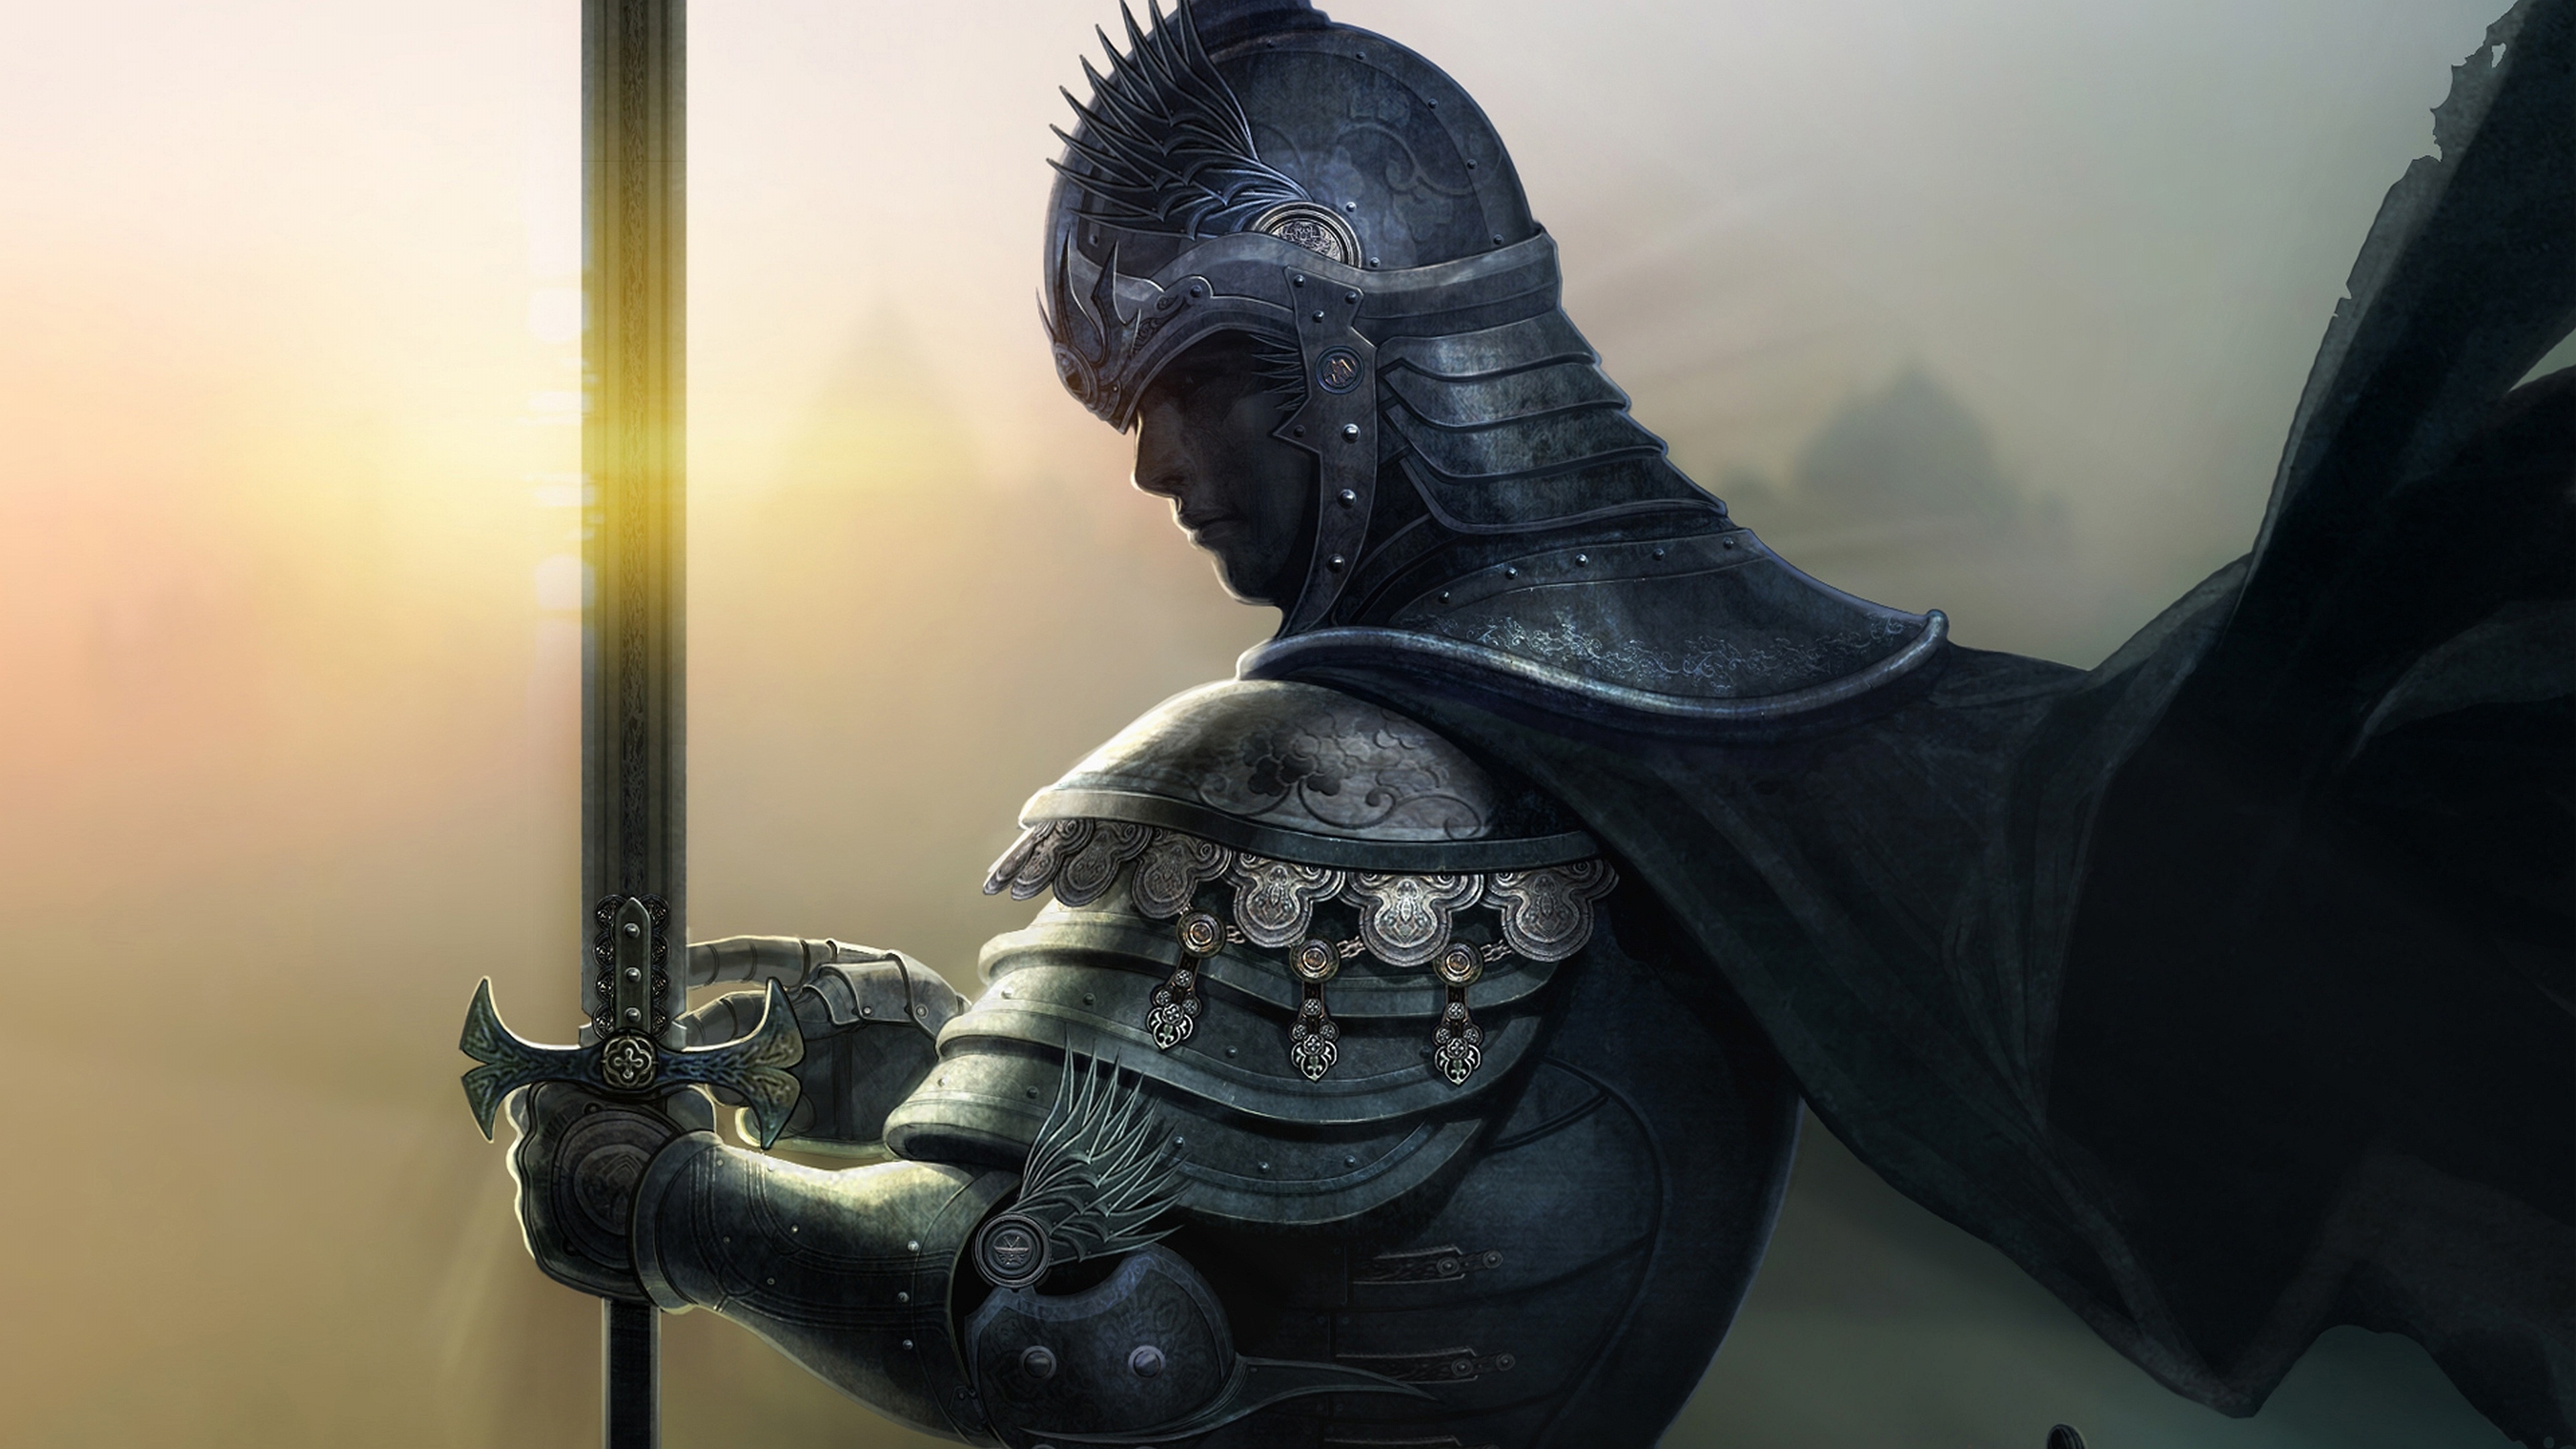 Knight sword, Armor sunlight, Sword cape fantasy, 3840x2160 4K Desktop